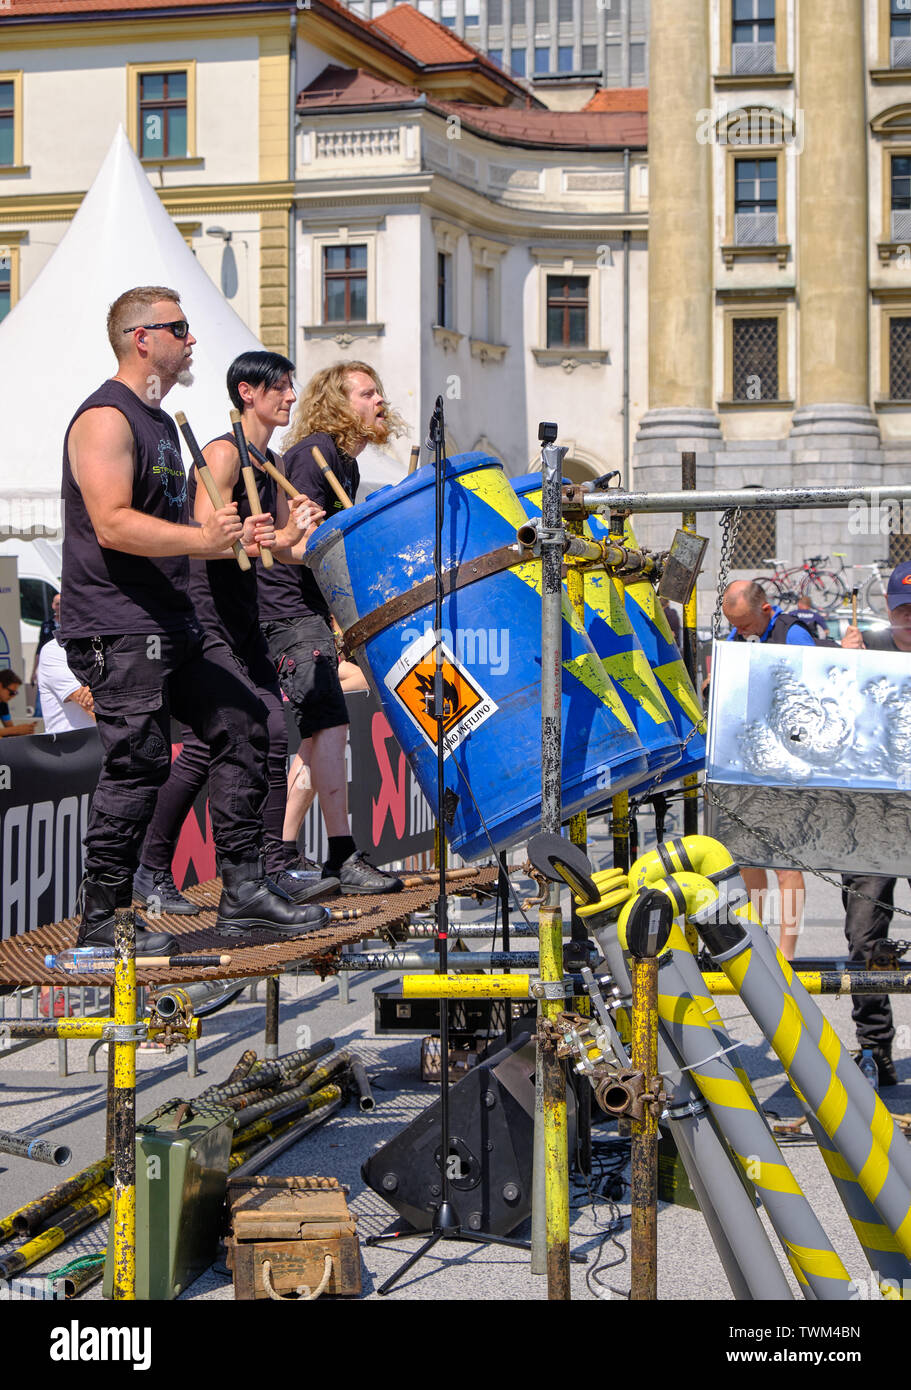 Industrielle Percussion band Stroj Maschine durchführen zu Beginn der Tour durch Slowenien Radrennen, Ljubljana, Slowenien - 19. Juni, 2019 Stockfoto